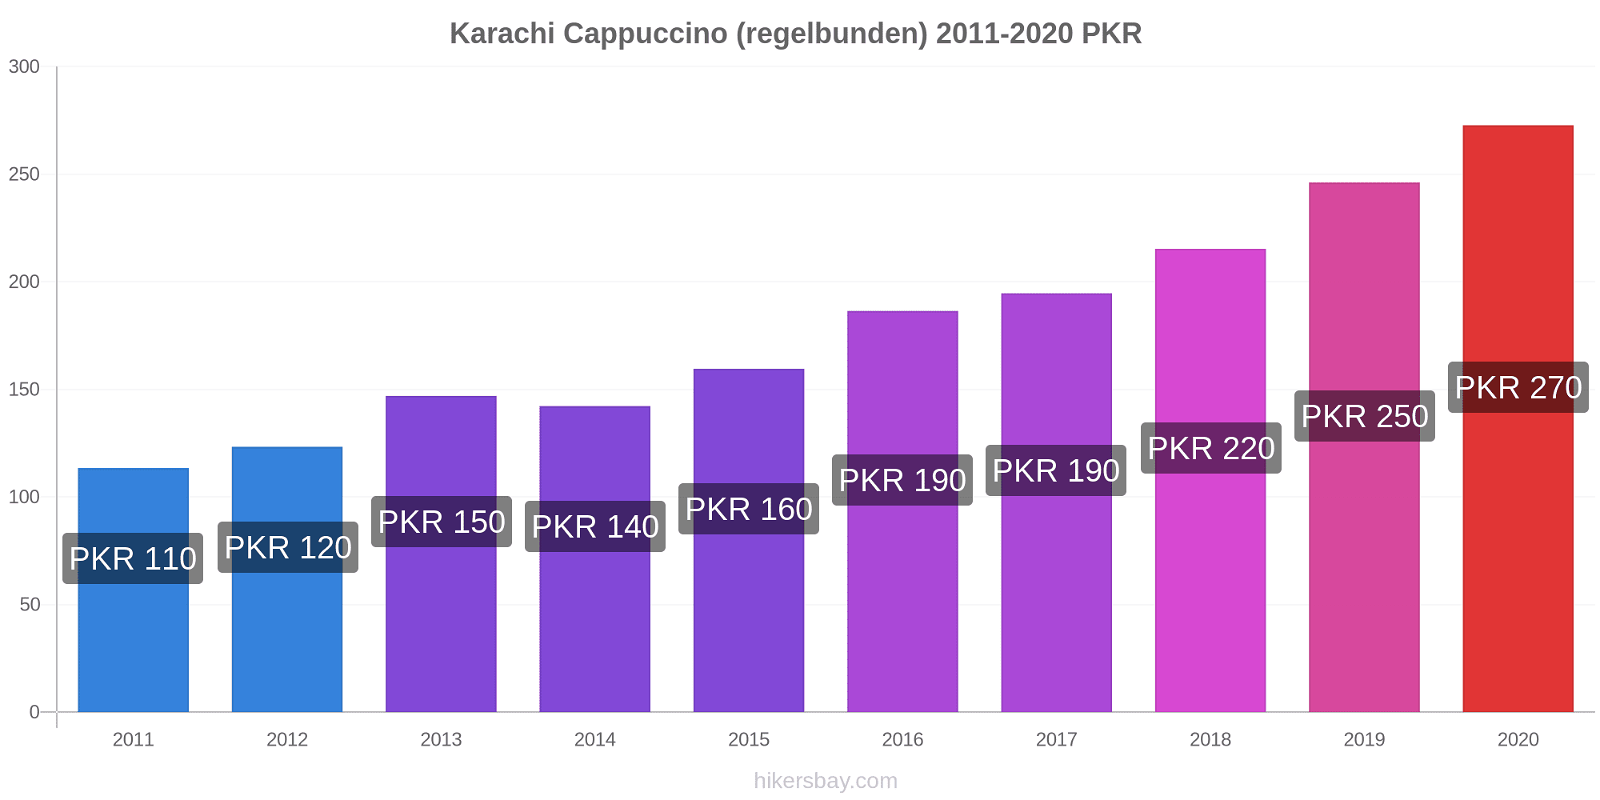 Karachi prisförändringar Cappuccino (regelbunden) hikersbay.com